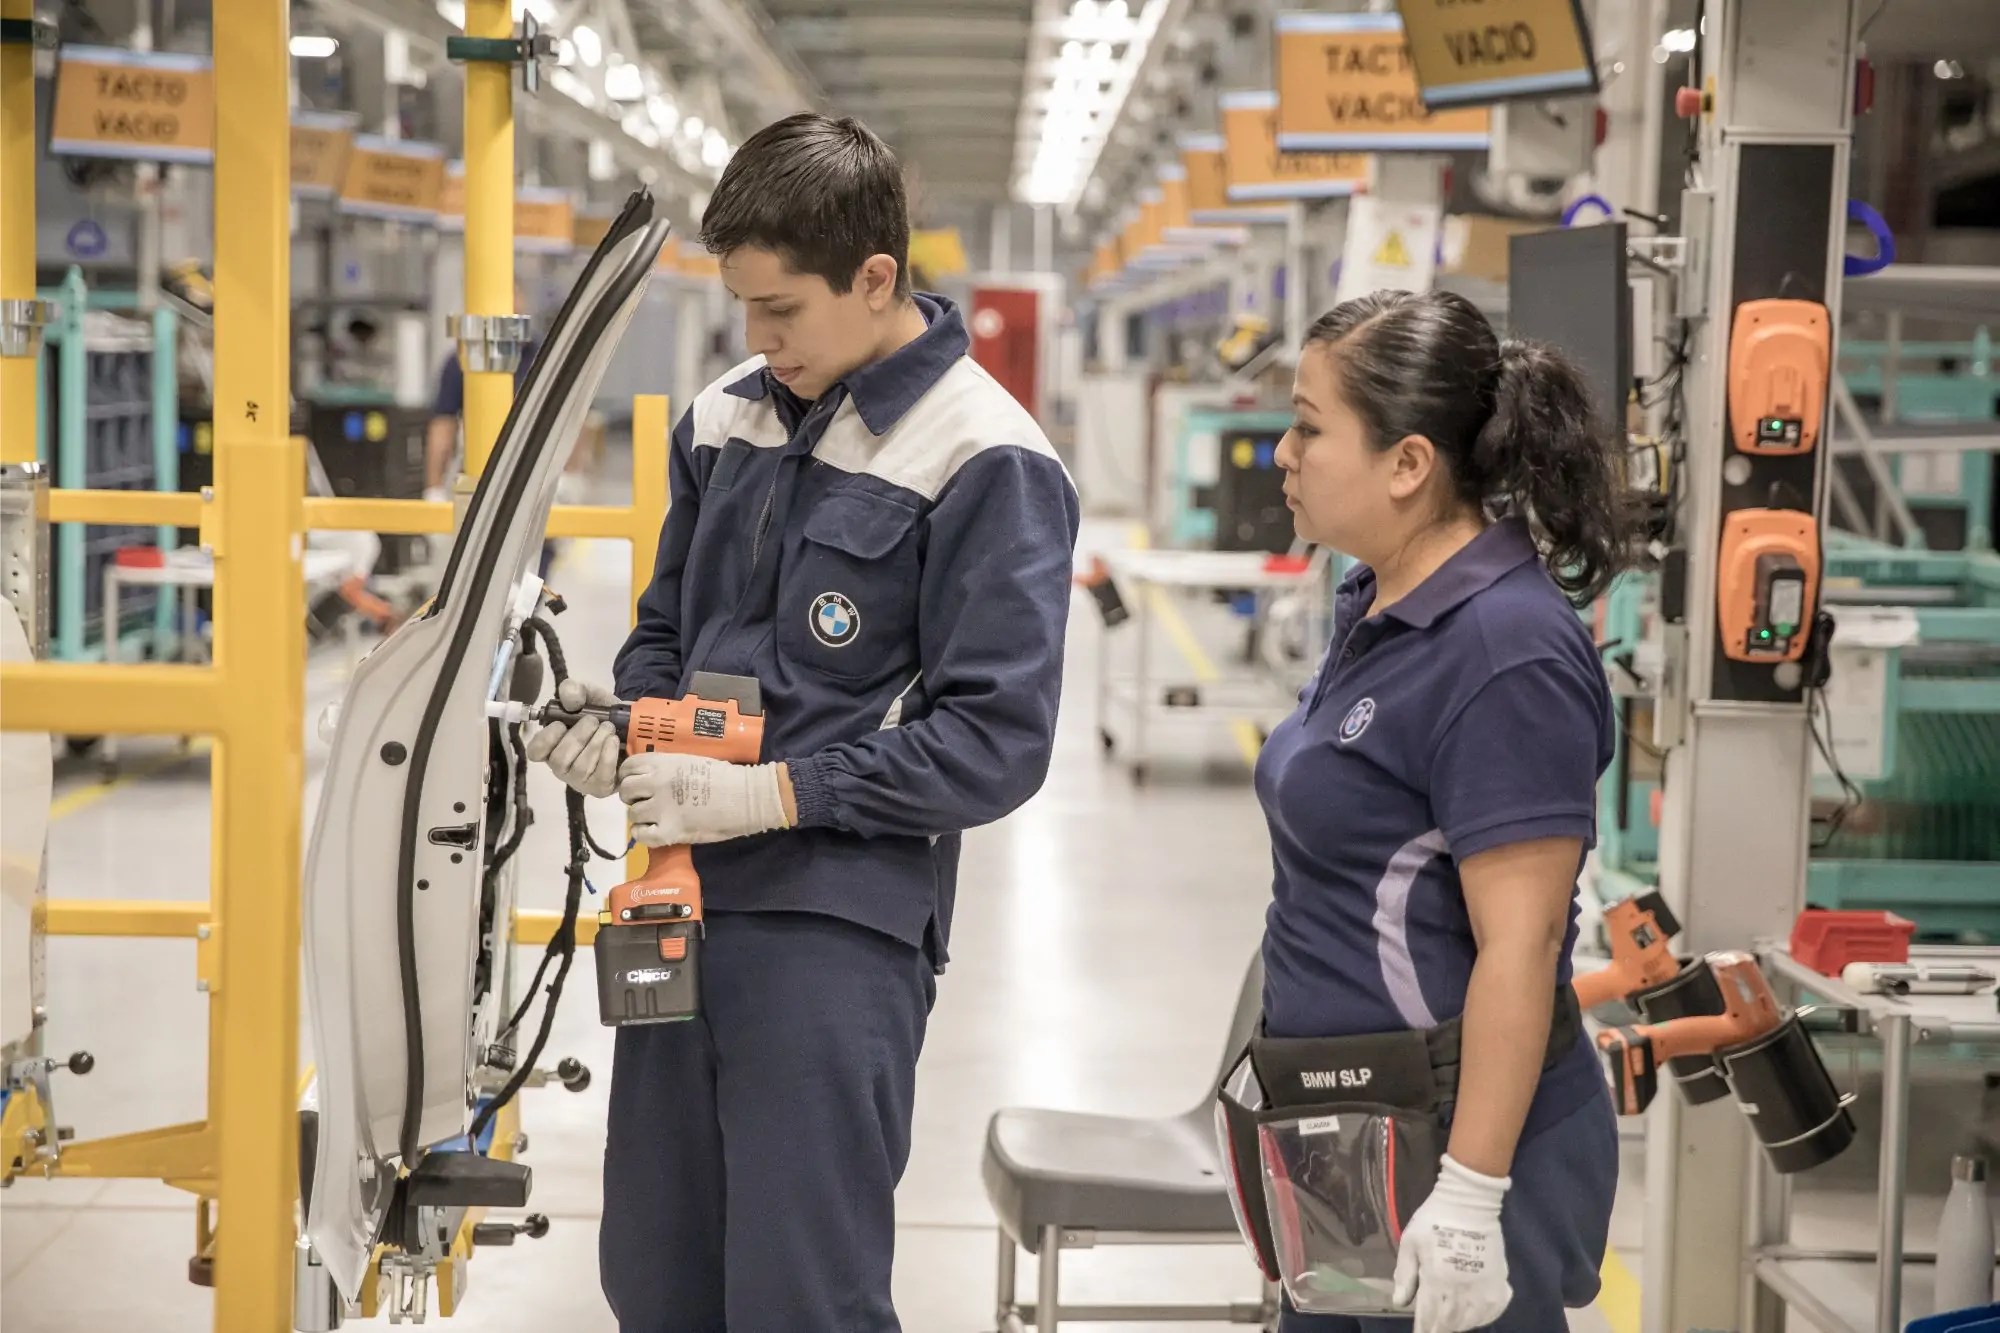 مصنع BMW في المكسيك توازن للانتاج والمبيعات حول العالم